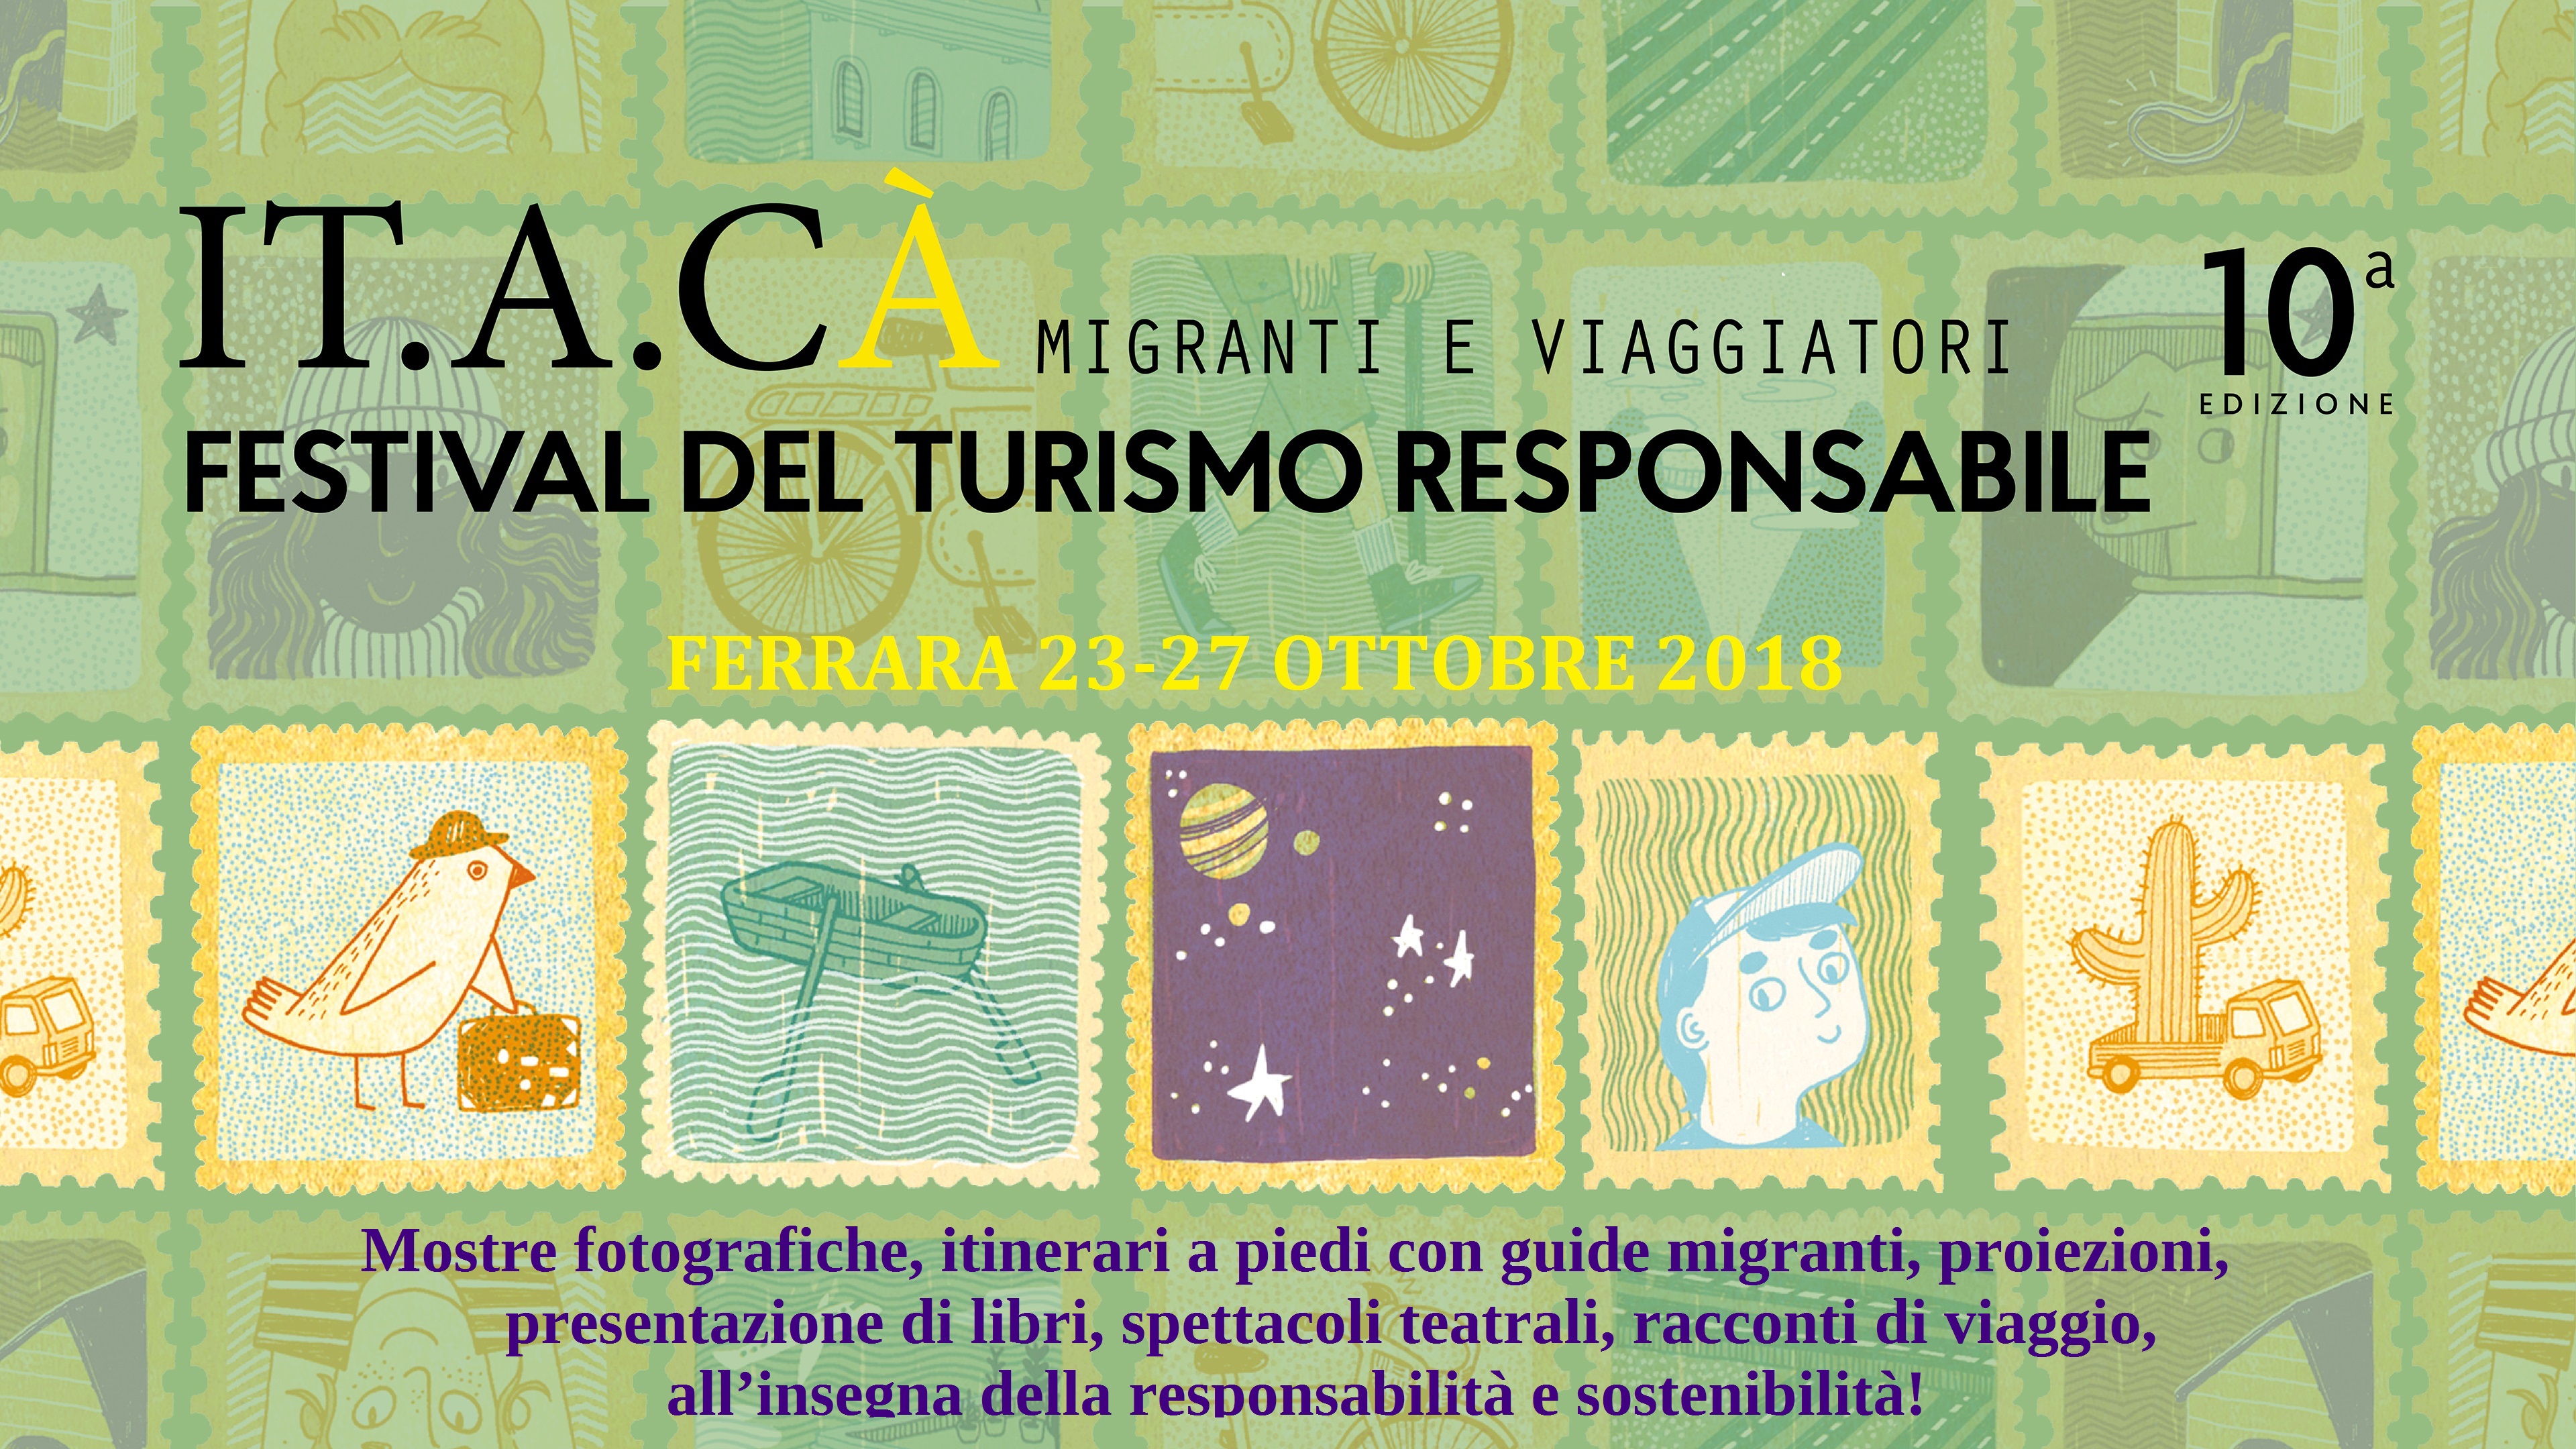 Ferrara: dal 23 ottobre al via IT.A.CÀ, migranti e viaggiatori, il Festival del turismo responsabile